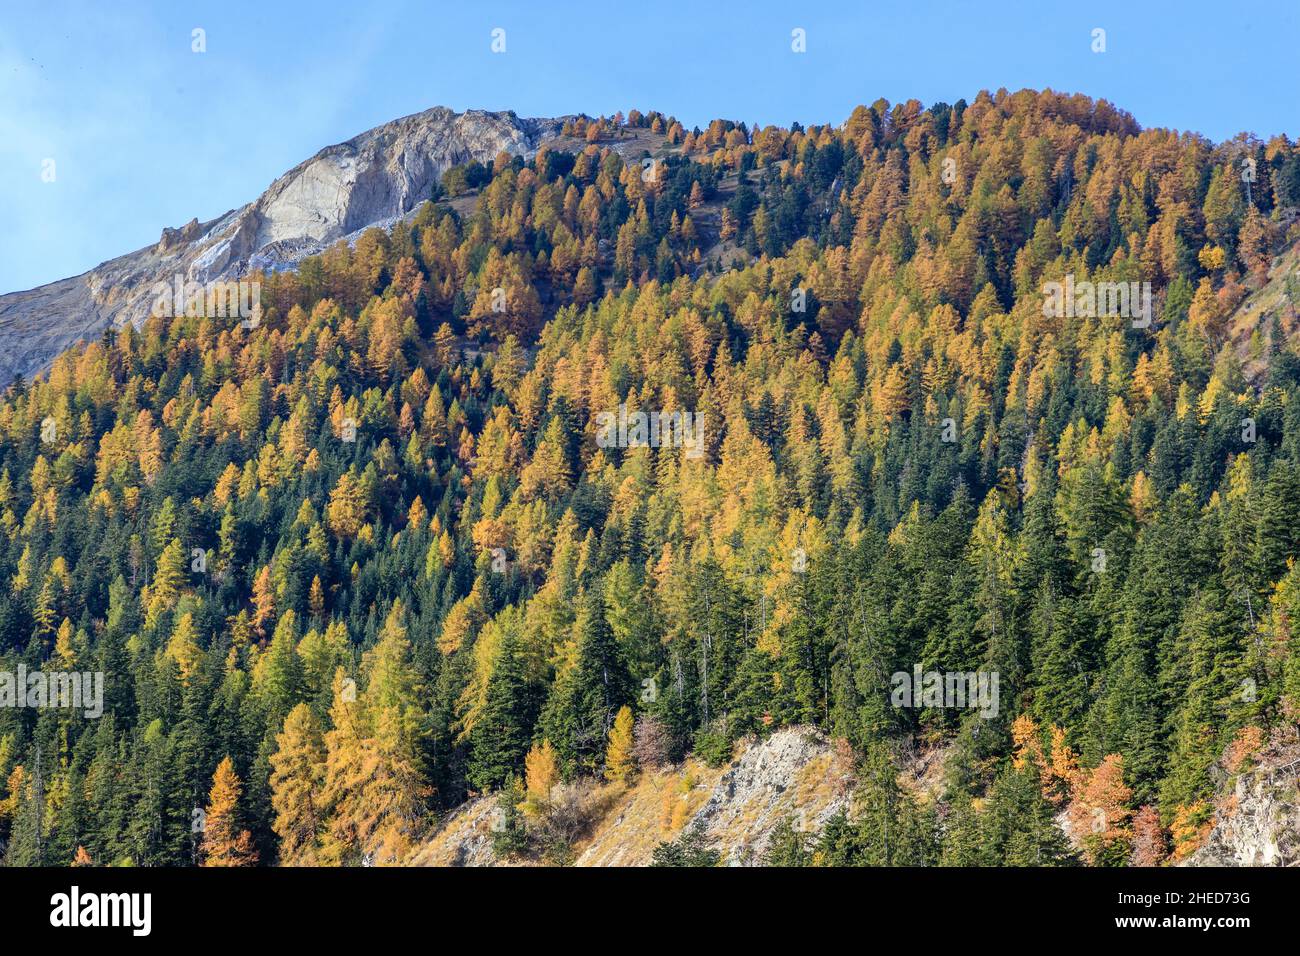 Francia, Altos Alpes, Crots, Bosque del estado de Boscodon en otoño, vista desde el Belvedere de Bragousse, abeto de plata europeo (Abies alba) y larc europeo Foto de stock